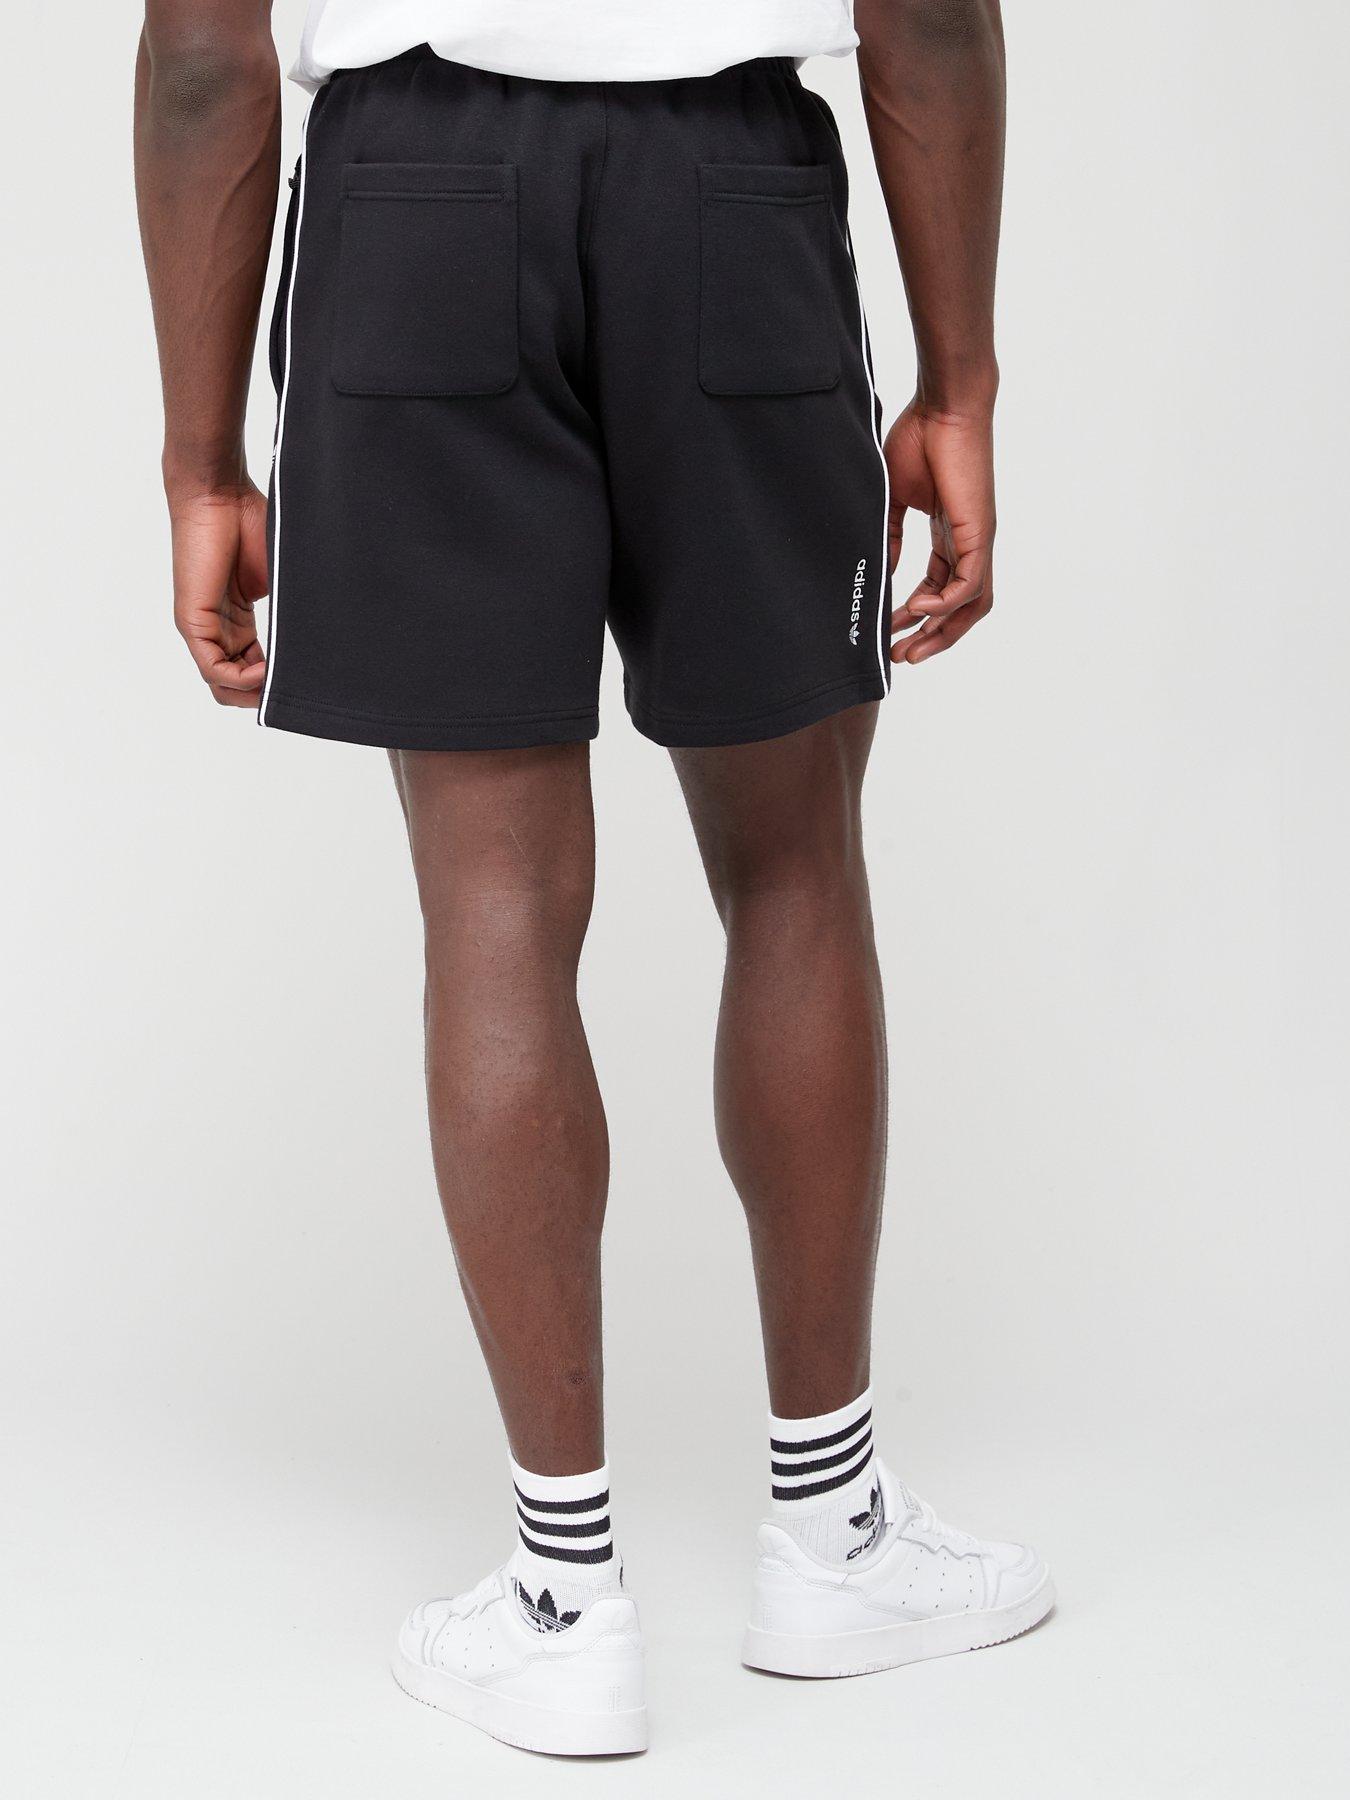 adidas Originals Adicolor Black - Seasonal Archive Shorts